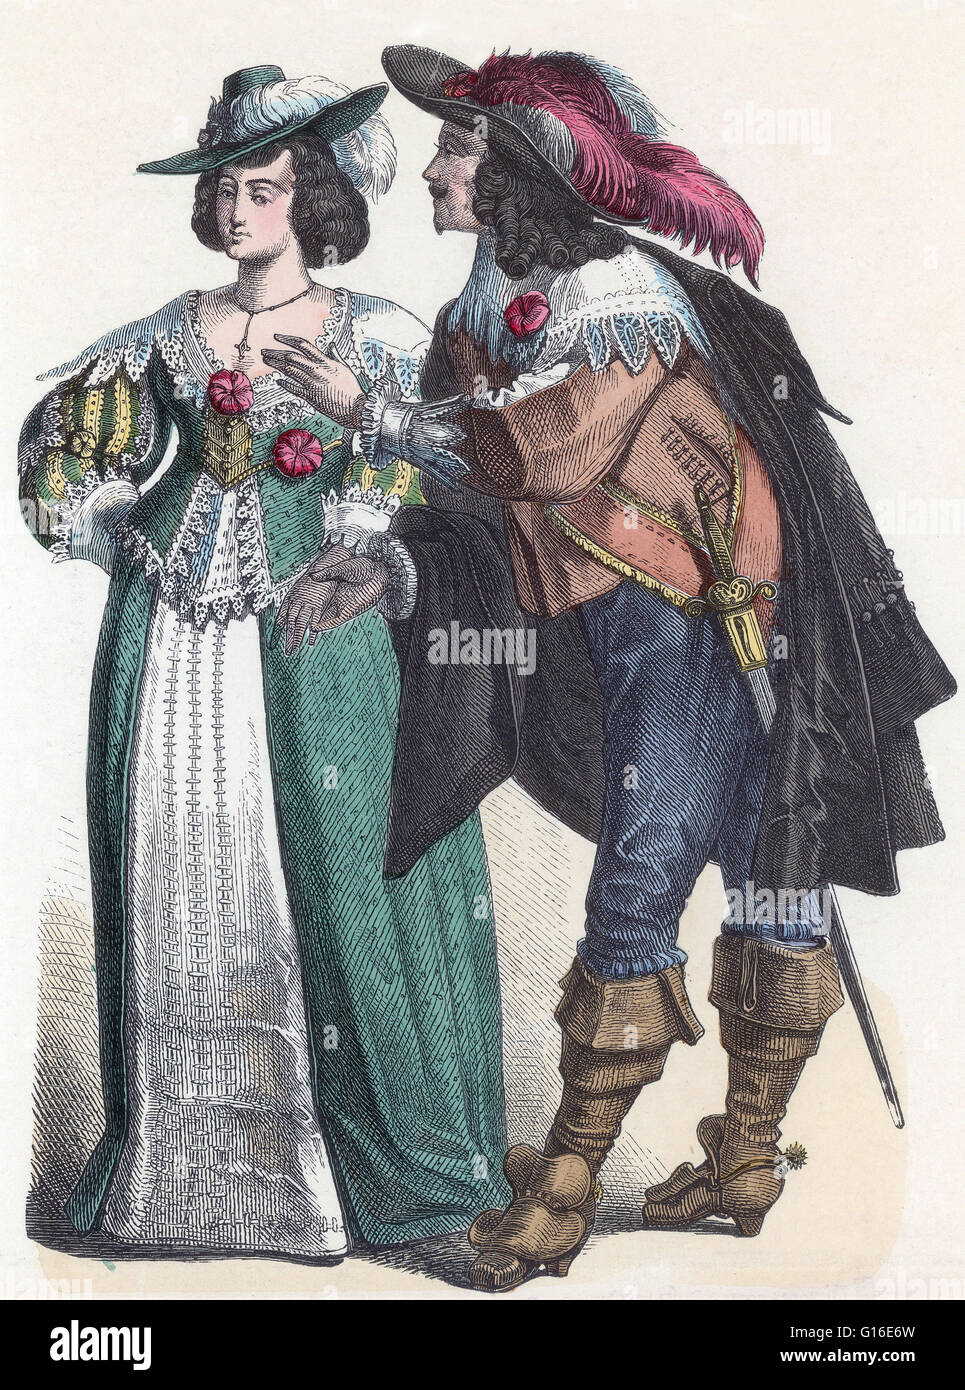 Intitulé : "noblesse allemande de l'époque Baroque.' La Mode dans la  période 1600-50 dans l'ouest de vêtements européens se caractérise par la  disparition de l'ruff en faveur d'une large dentelle ou ,